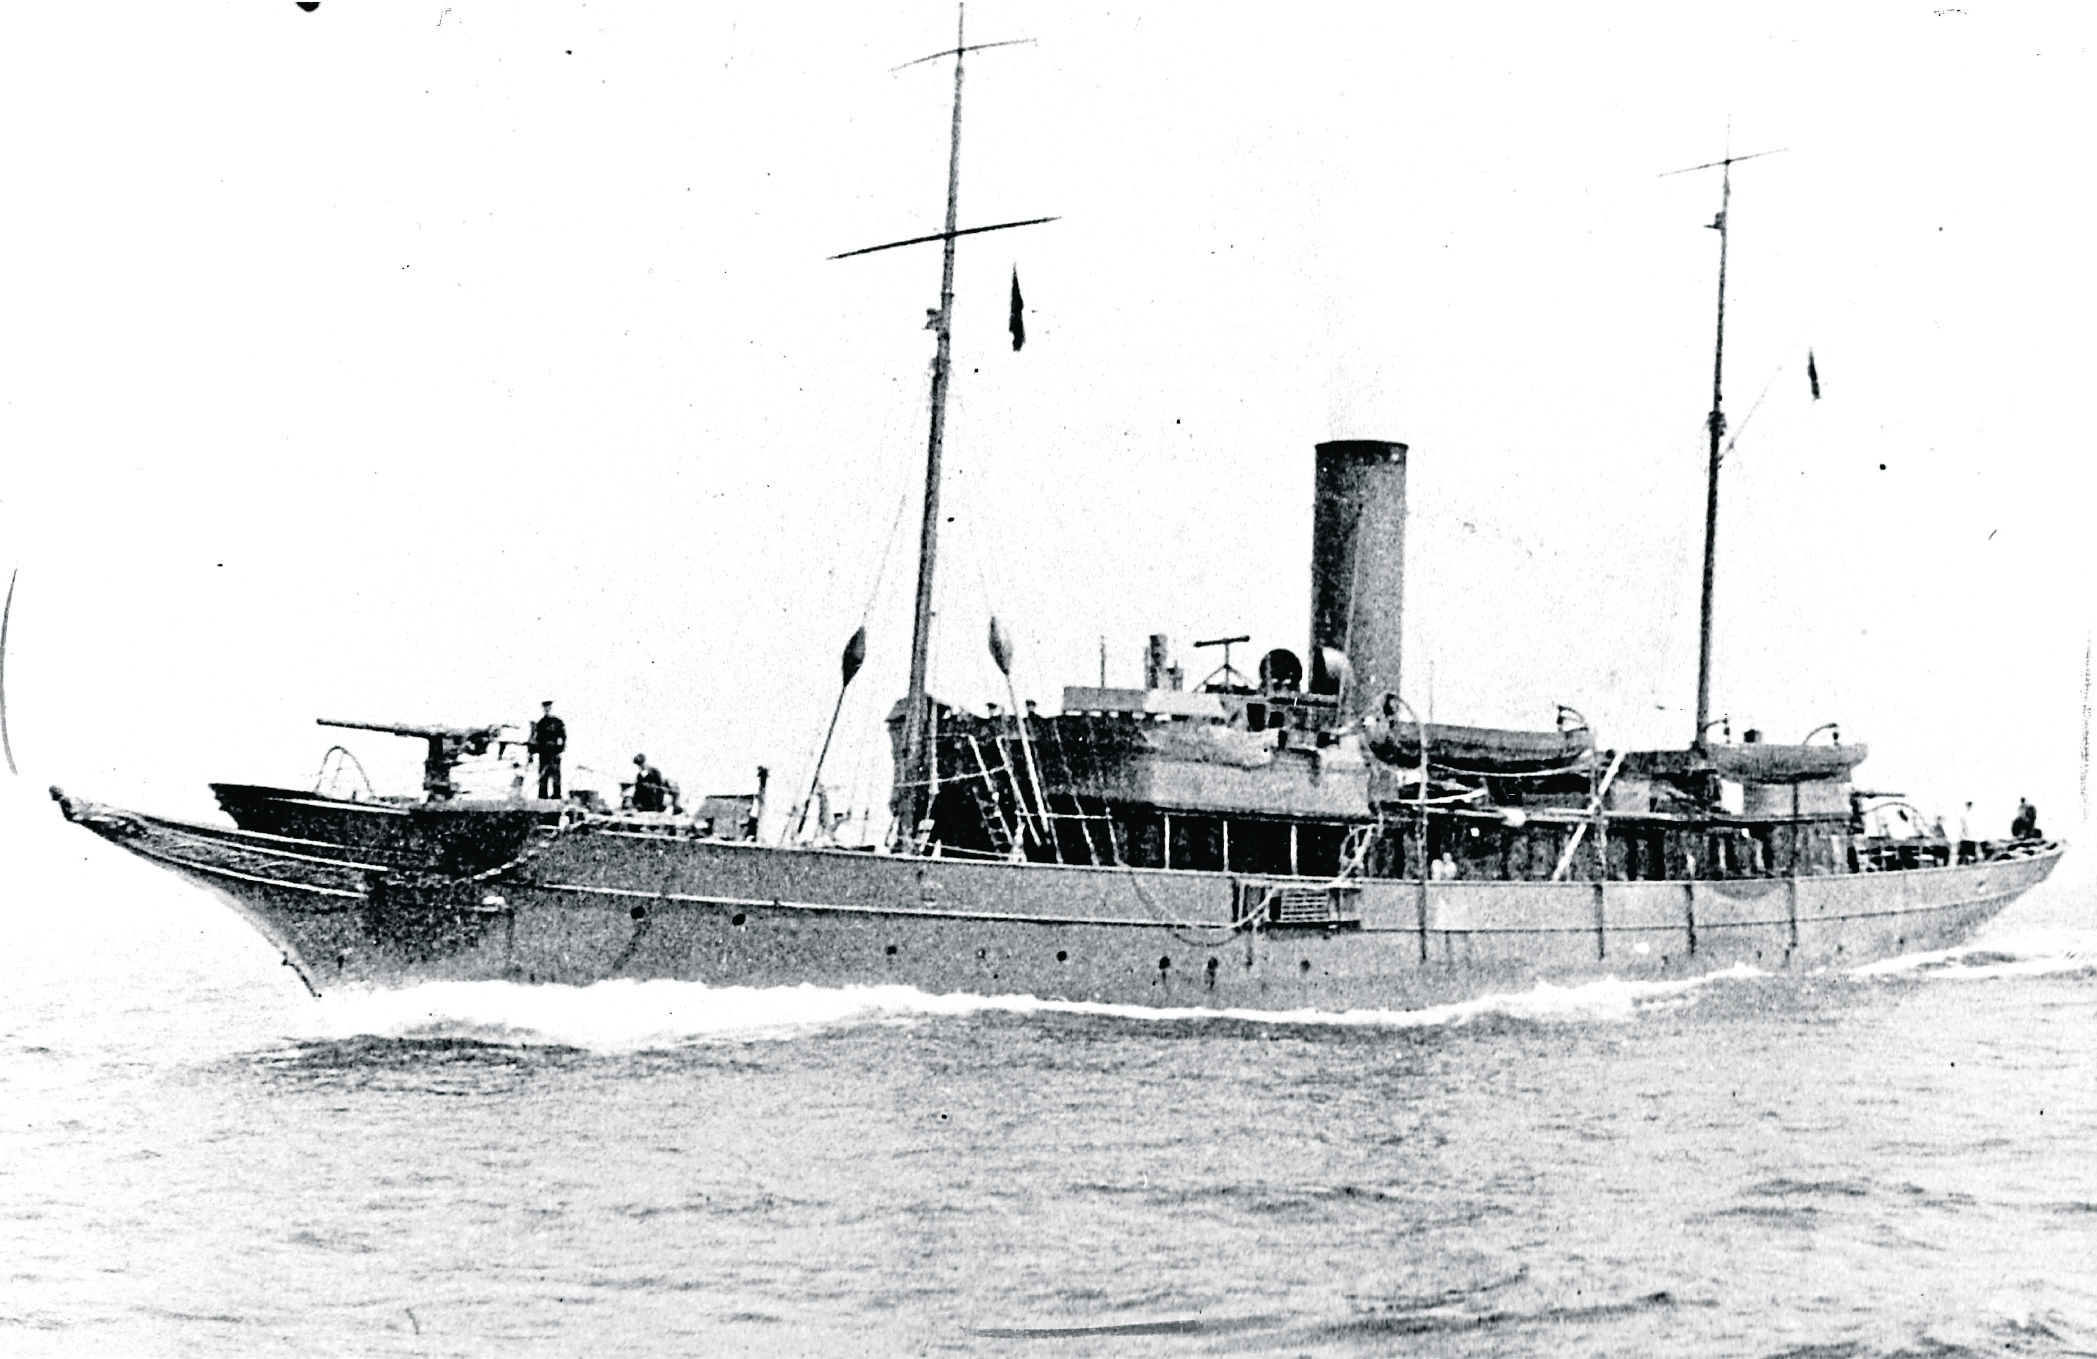 HM Yacht Iolaire, 1919.